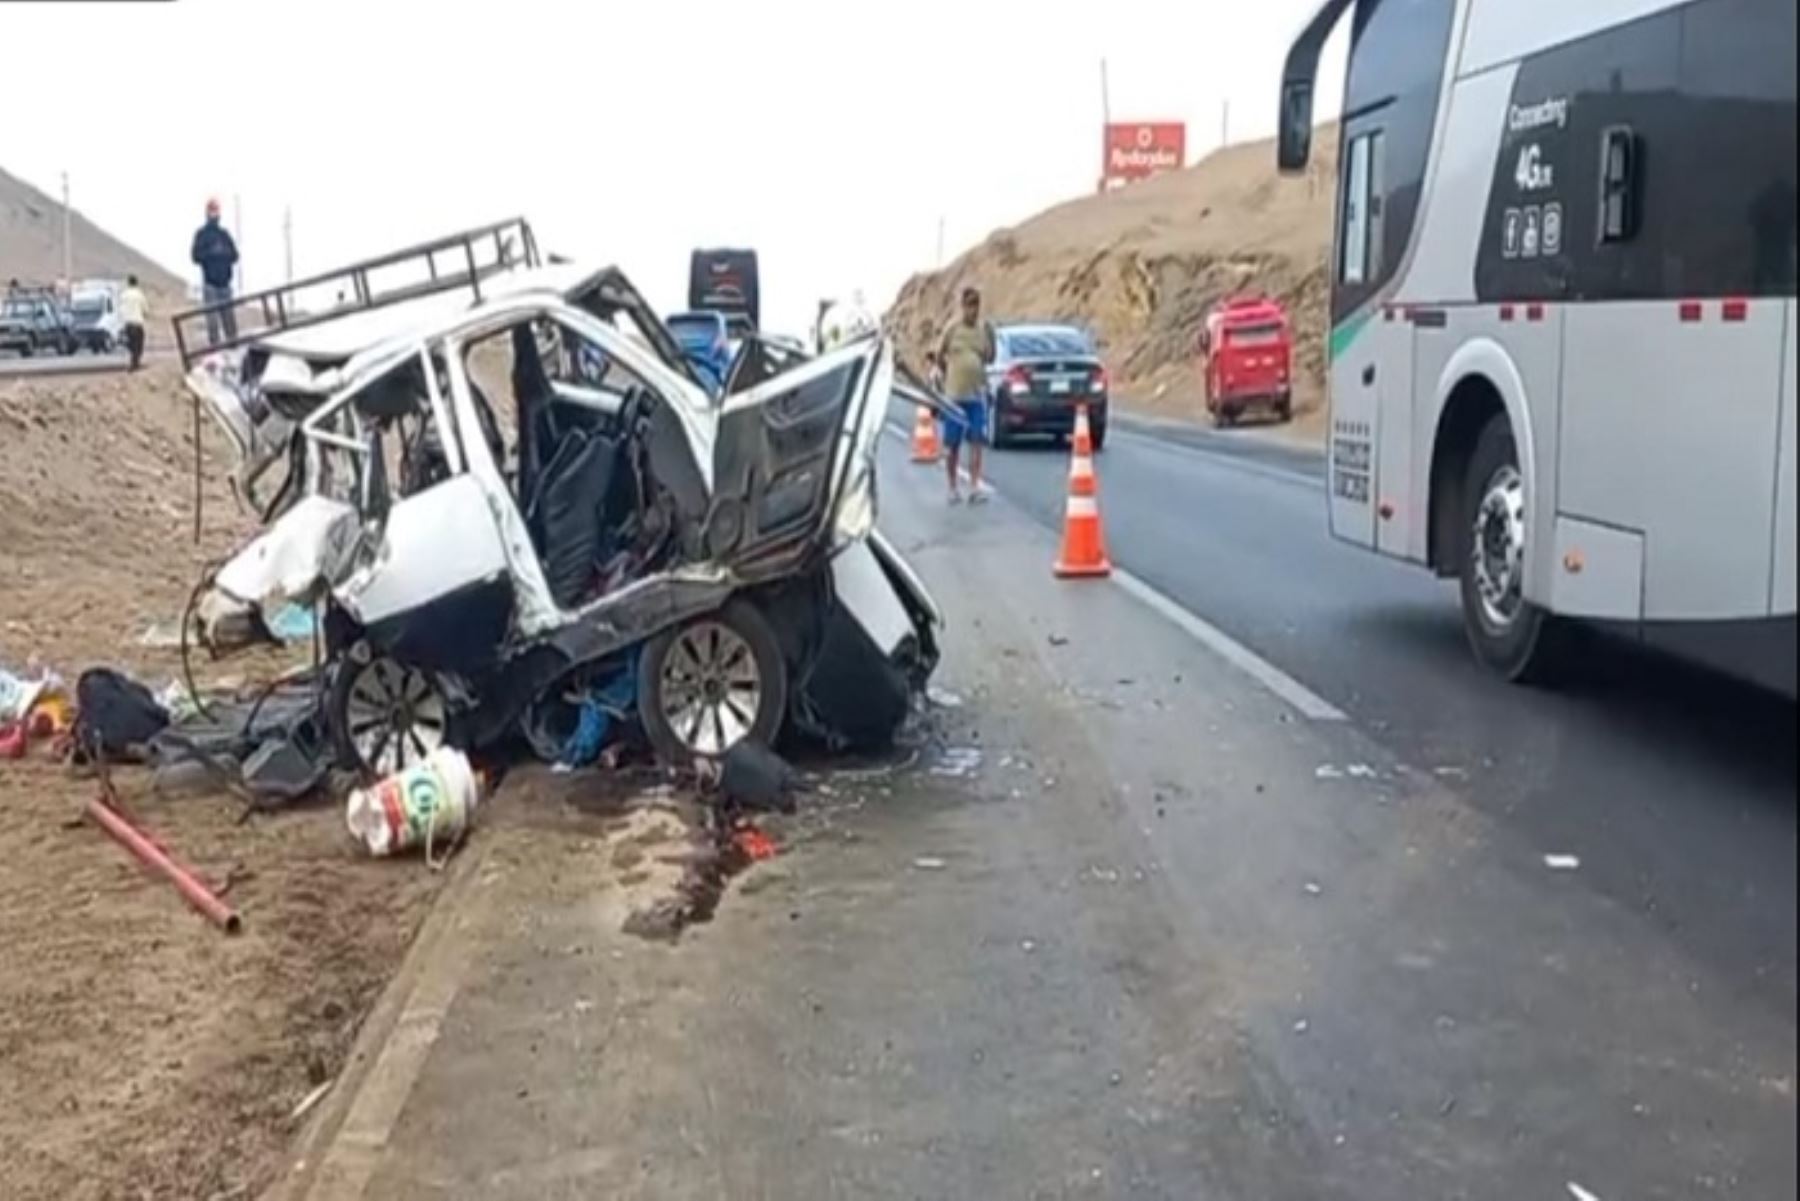 Impacto de bus interprovincial contra auto en Huacho deja 5 muertos